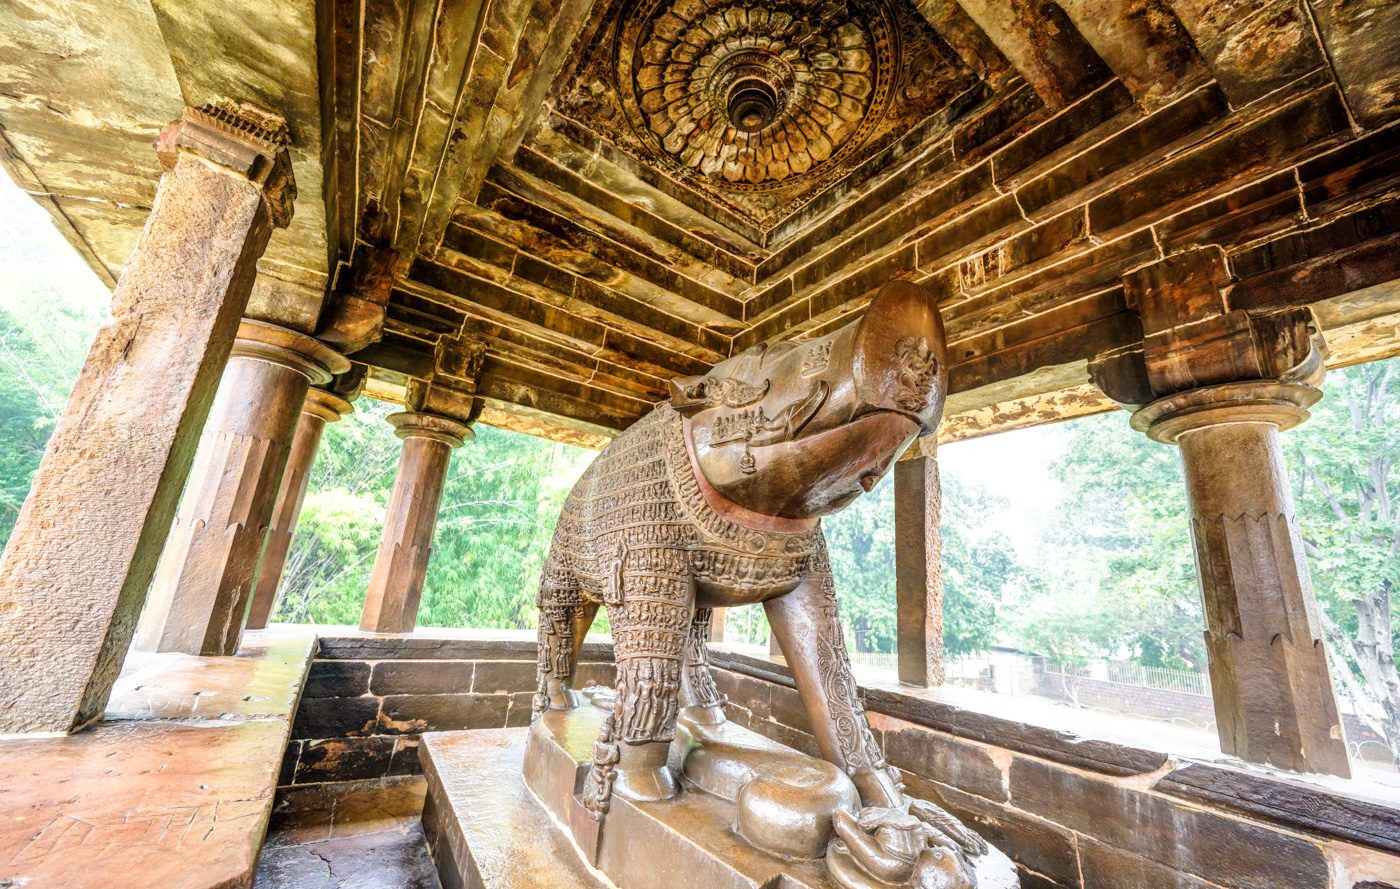 Varaha at Khajuraho Temple (UNESCO World Heritage Site), India by Pinaki Sarkar